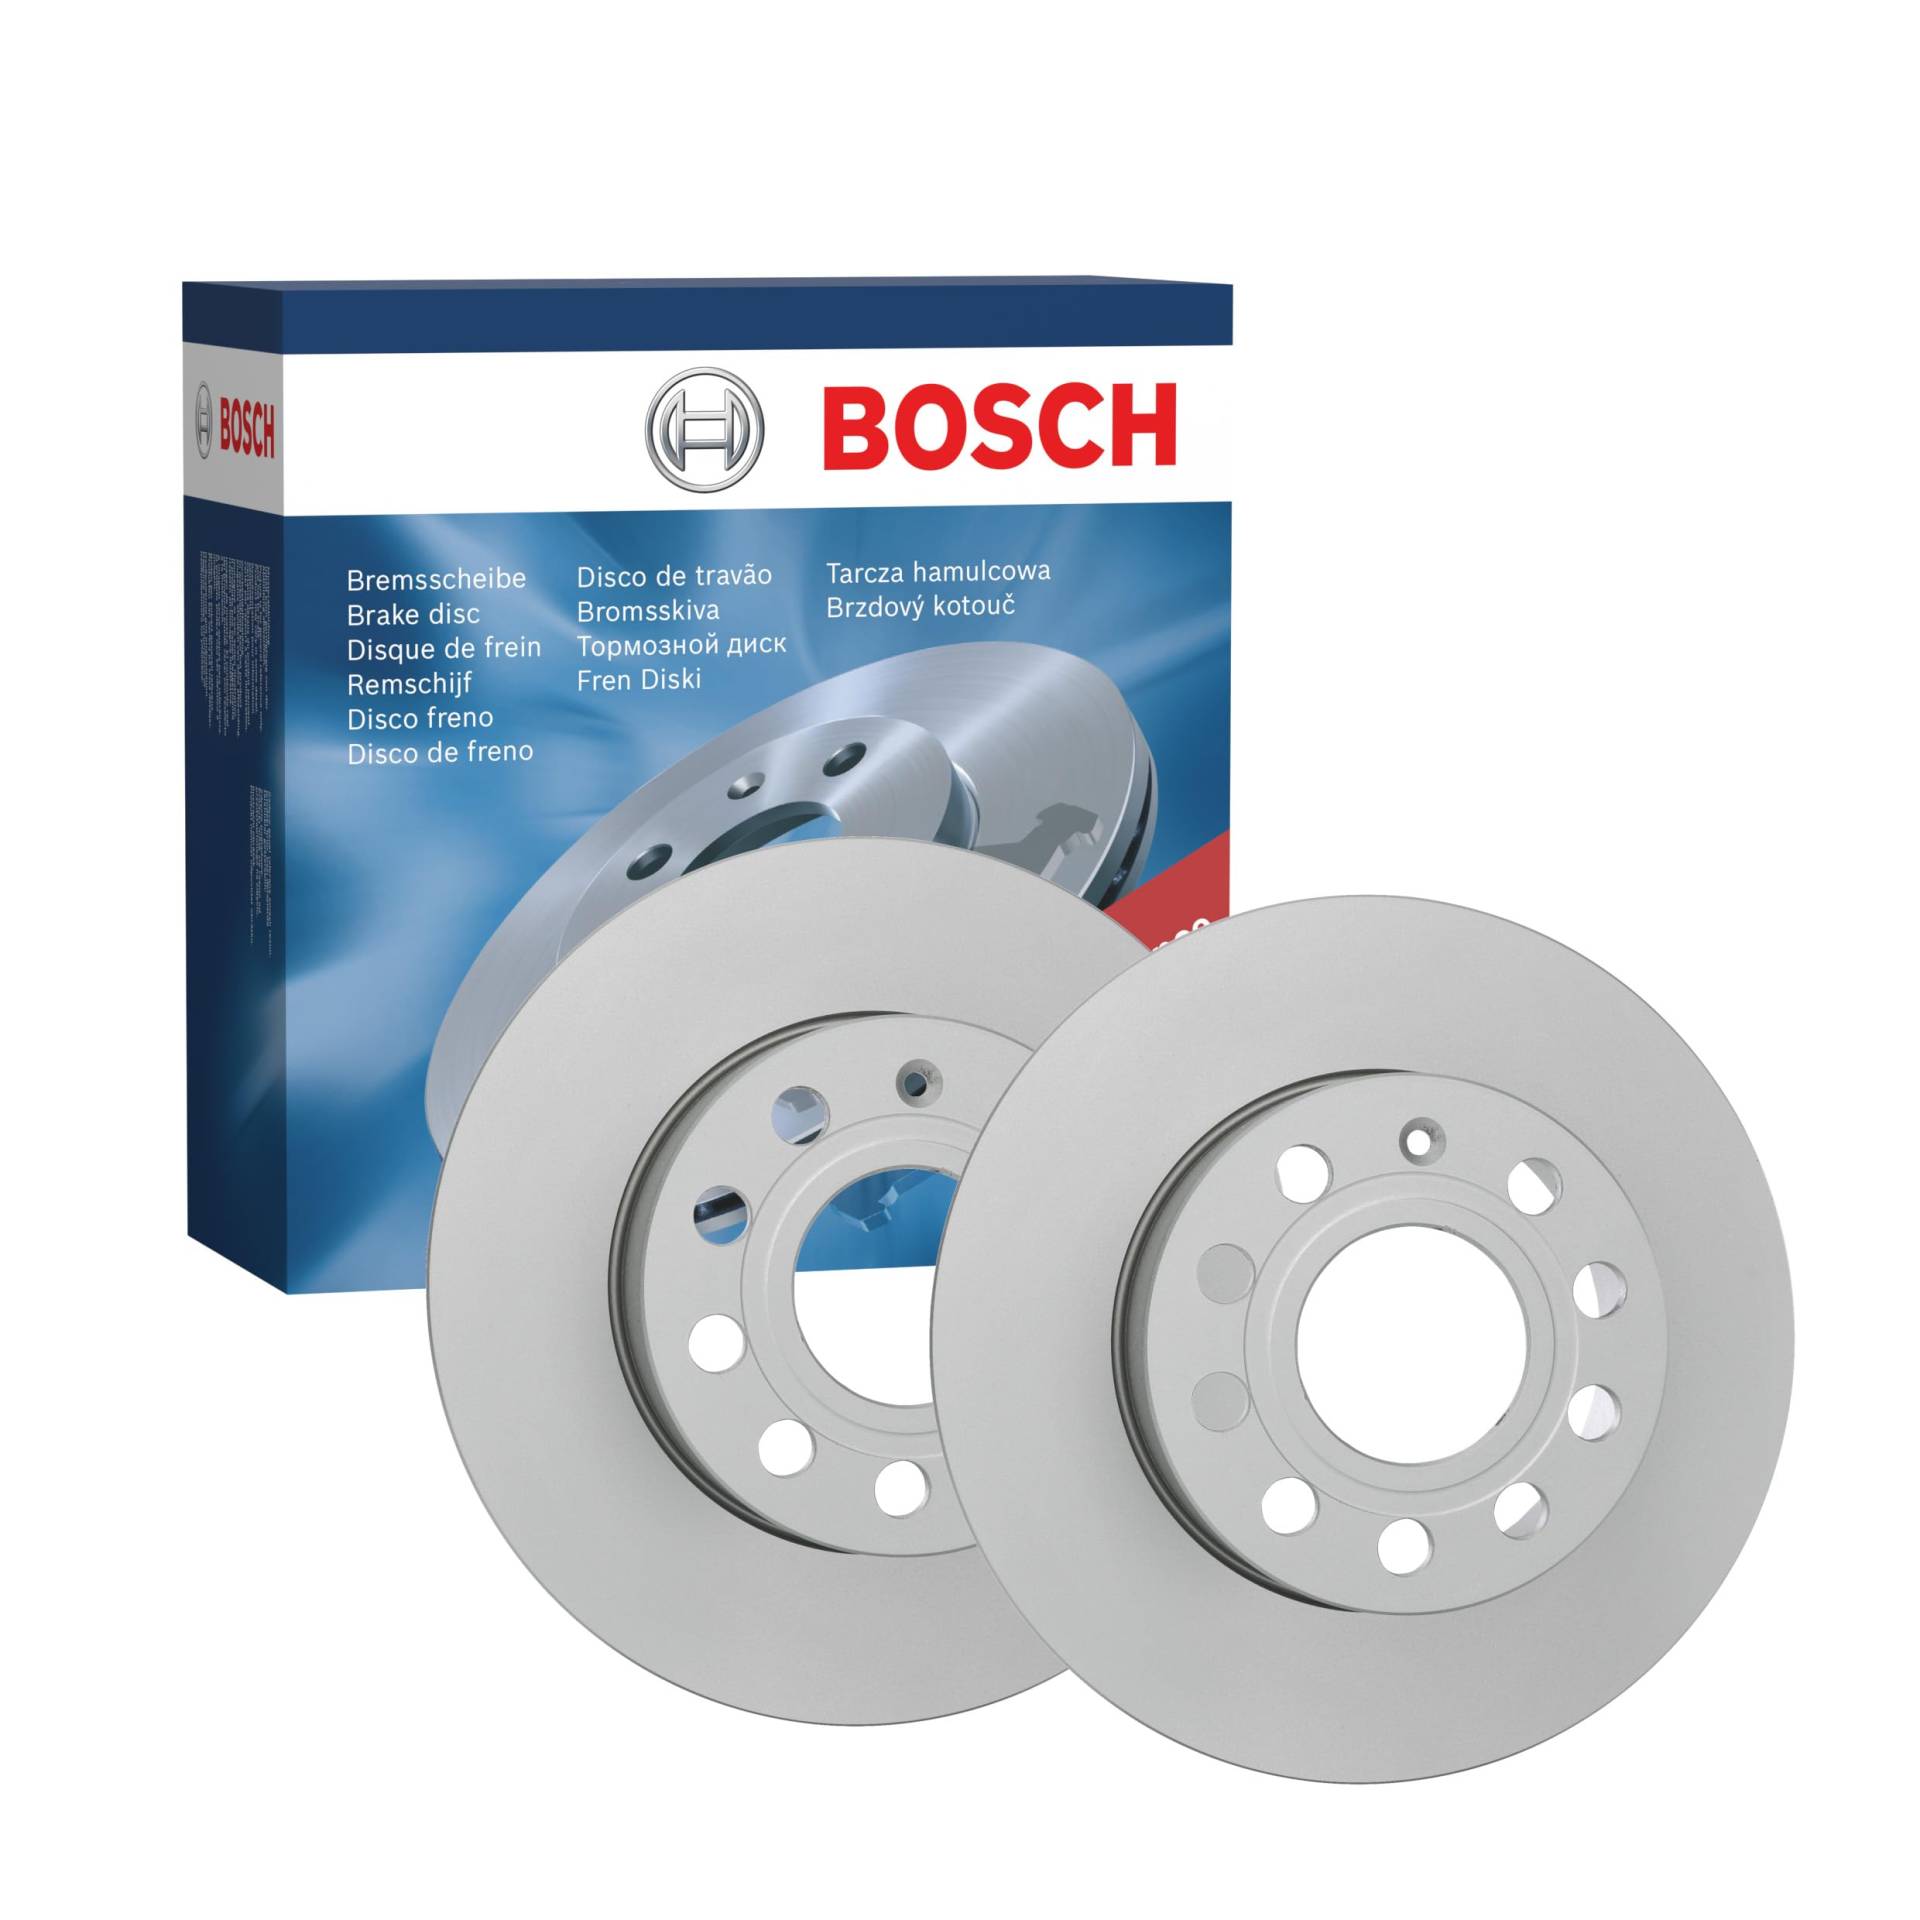 Bosch BD2079 Bremsscheiben - Hinterachse - ECE-R90 Zertifizierung - zwei Bremsscheiben pro Set von Bosch Automotive